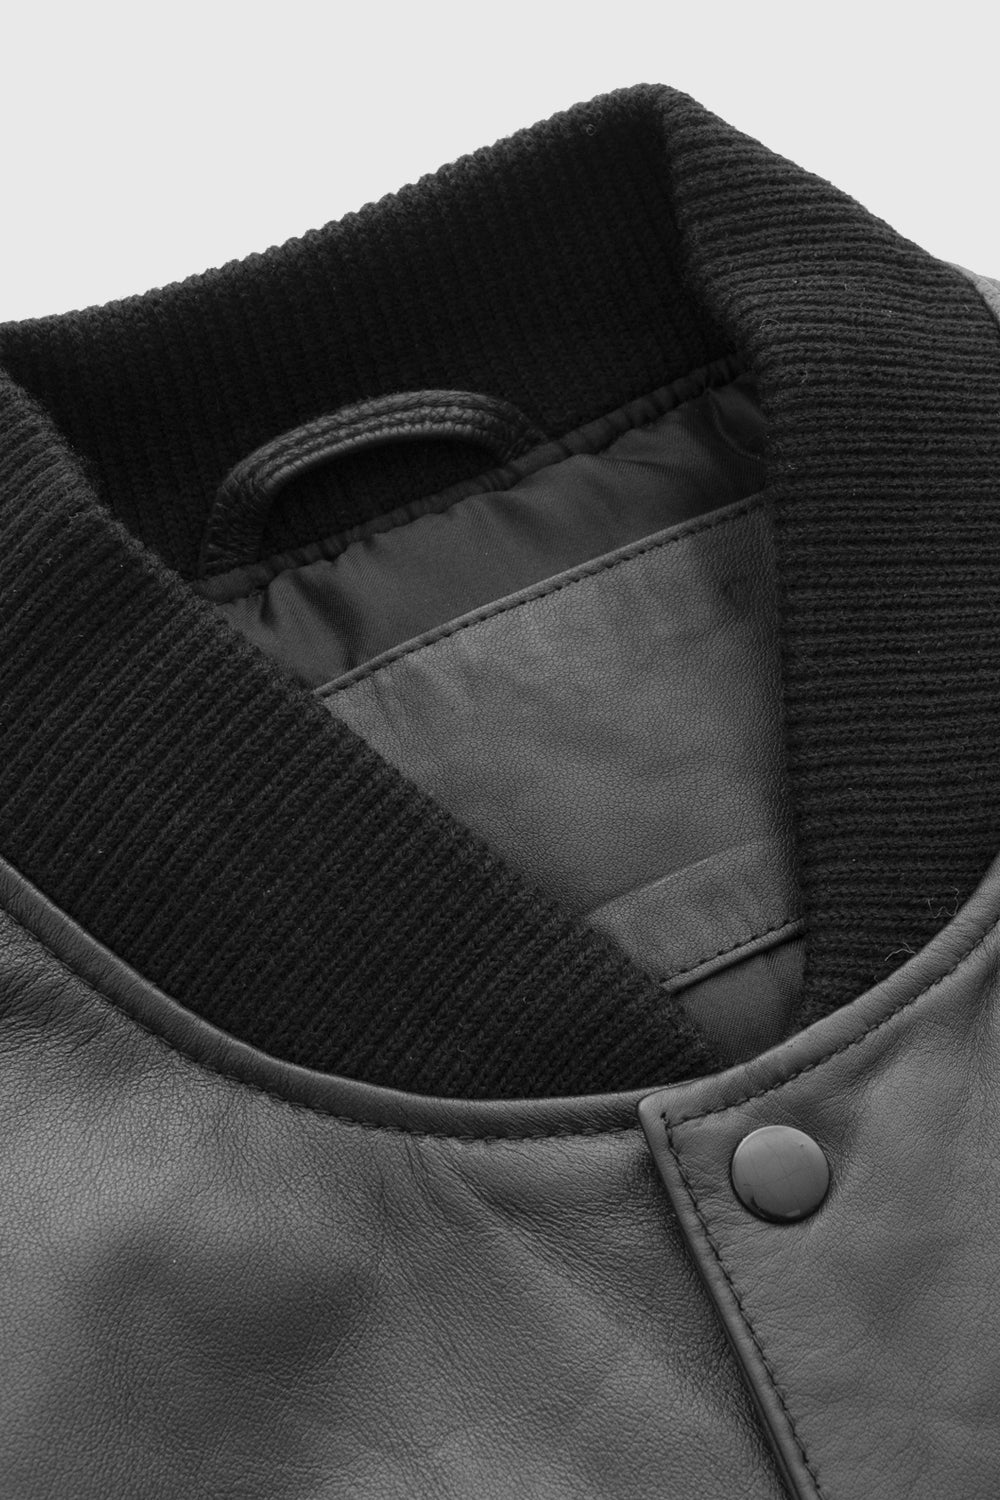 Keith Fashion Varsity Leather Jacket